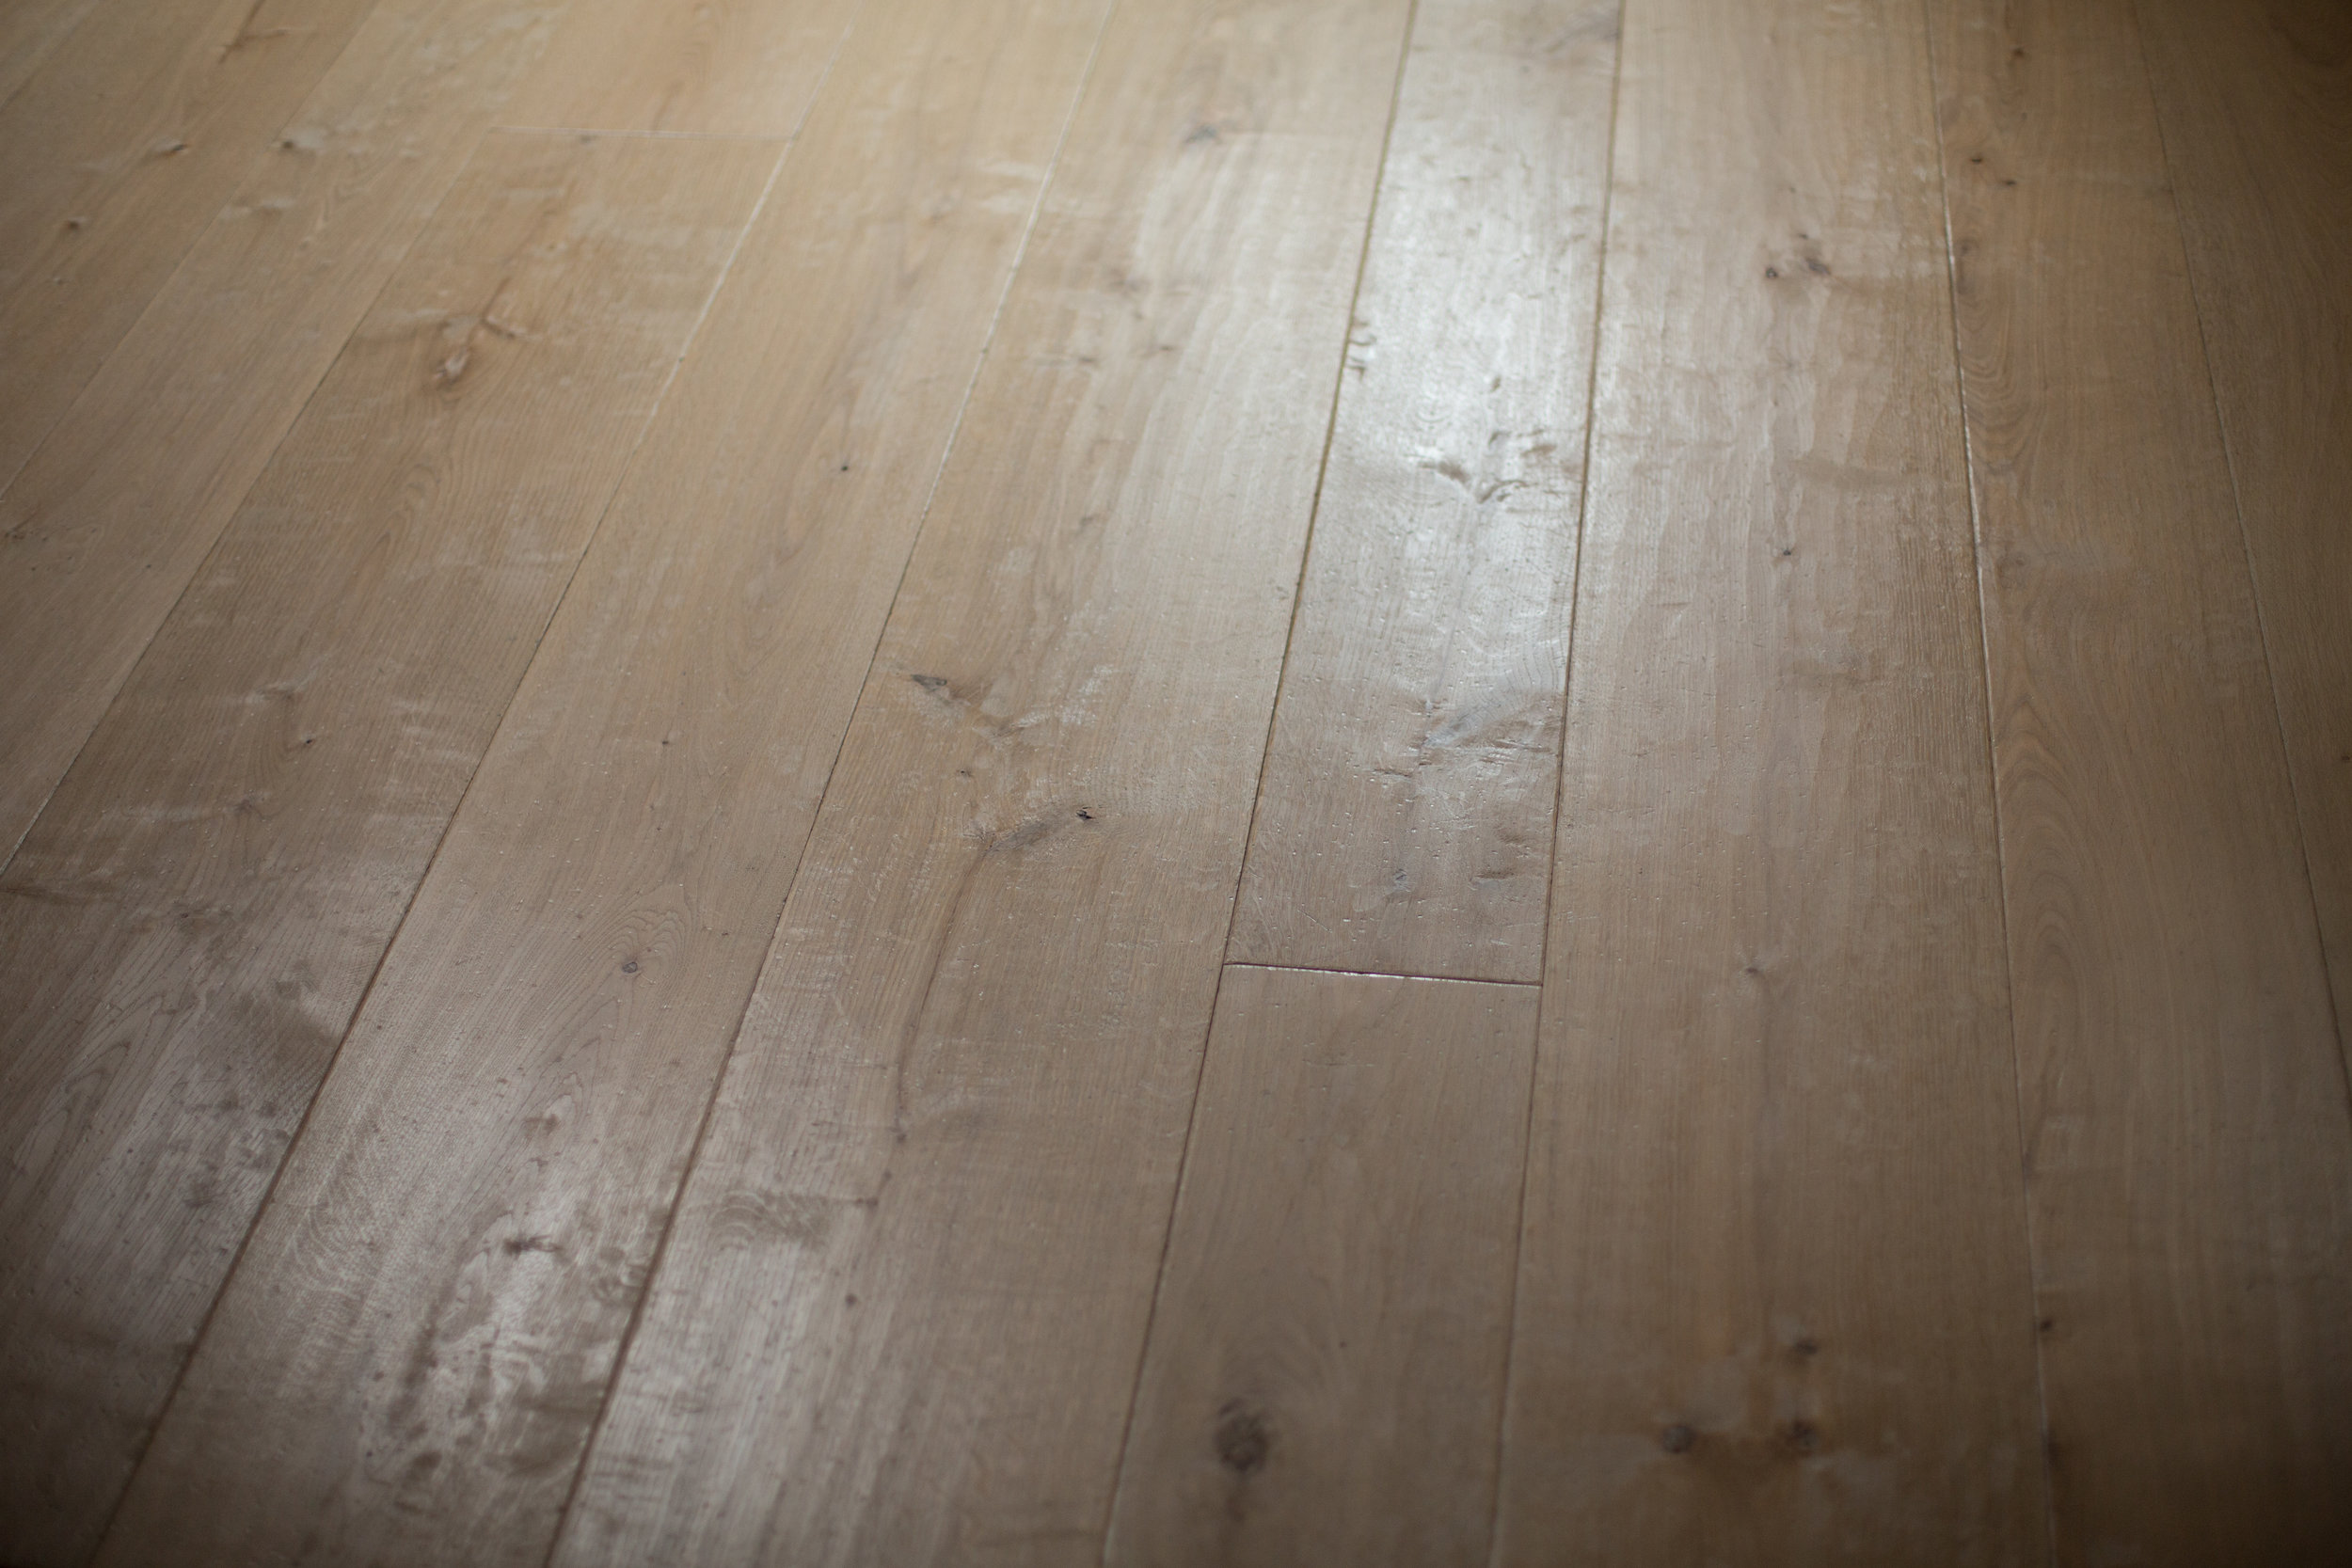  Rustic wood flooring